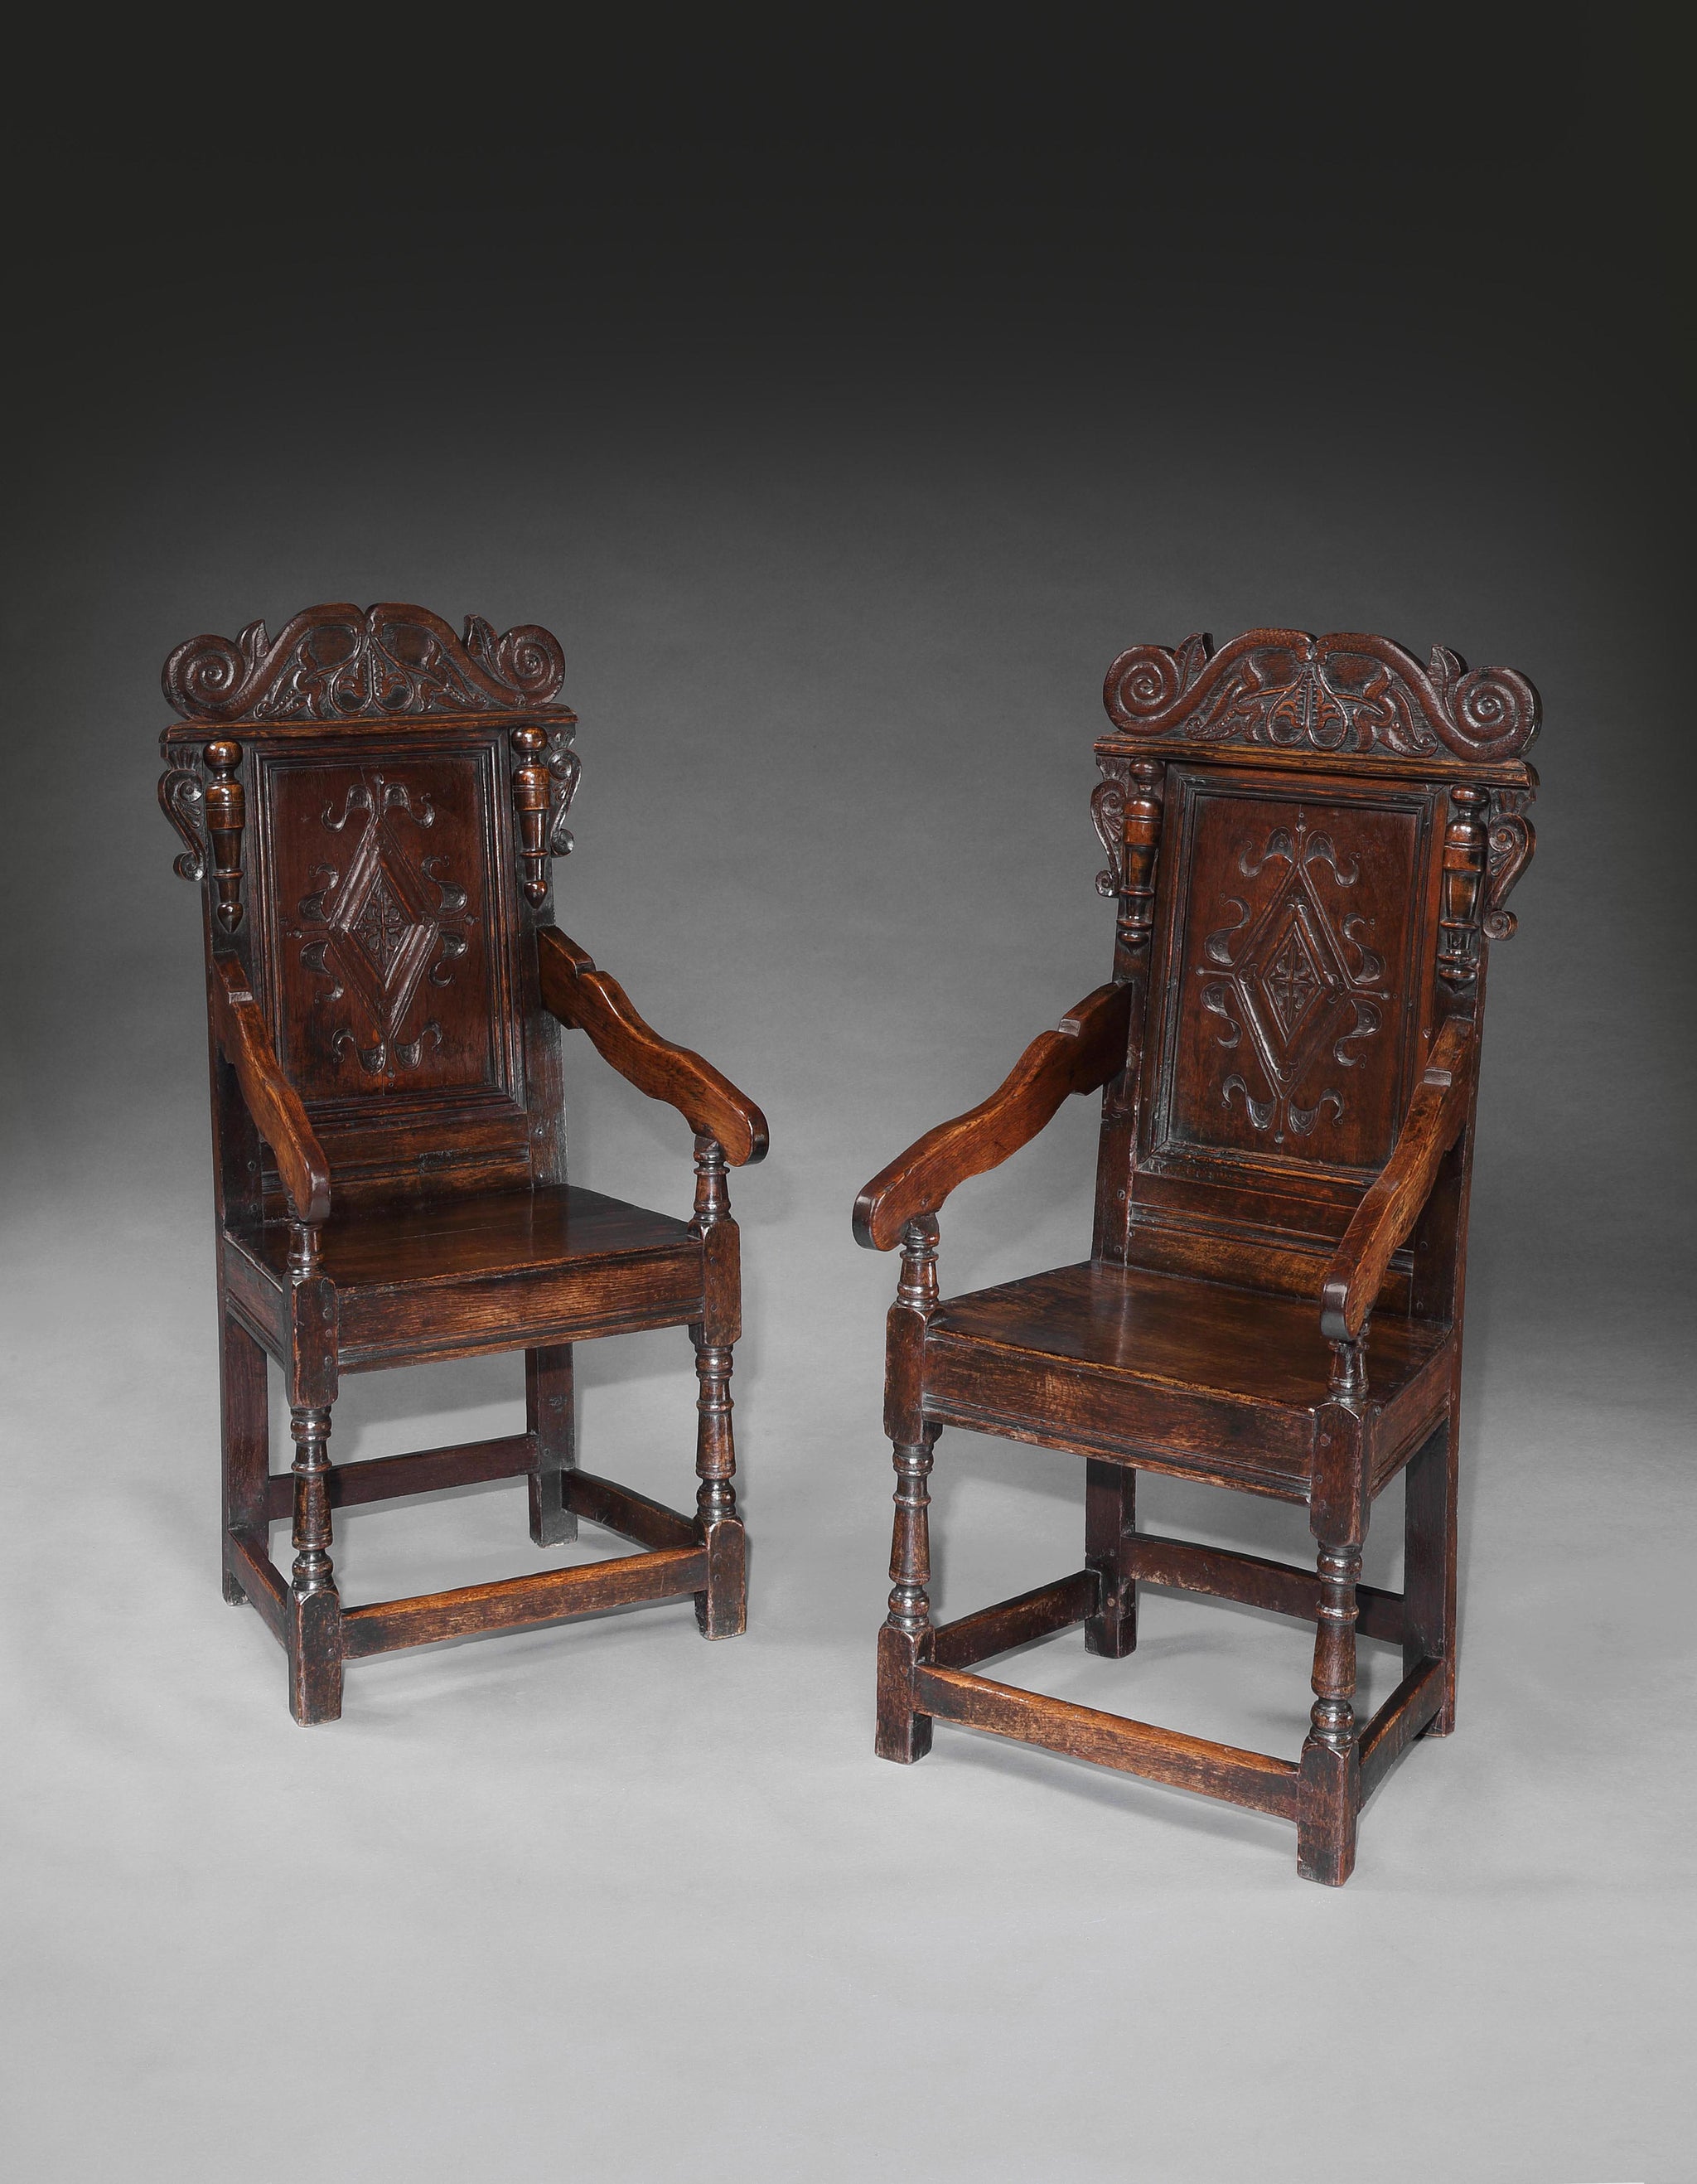 Pair of Charles II Wainscot Chairs